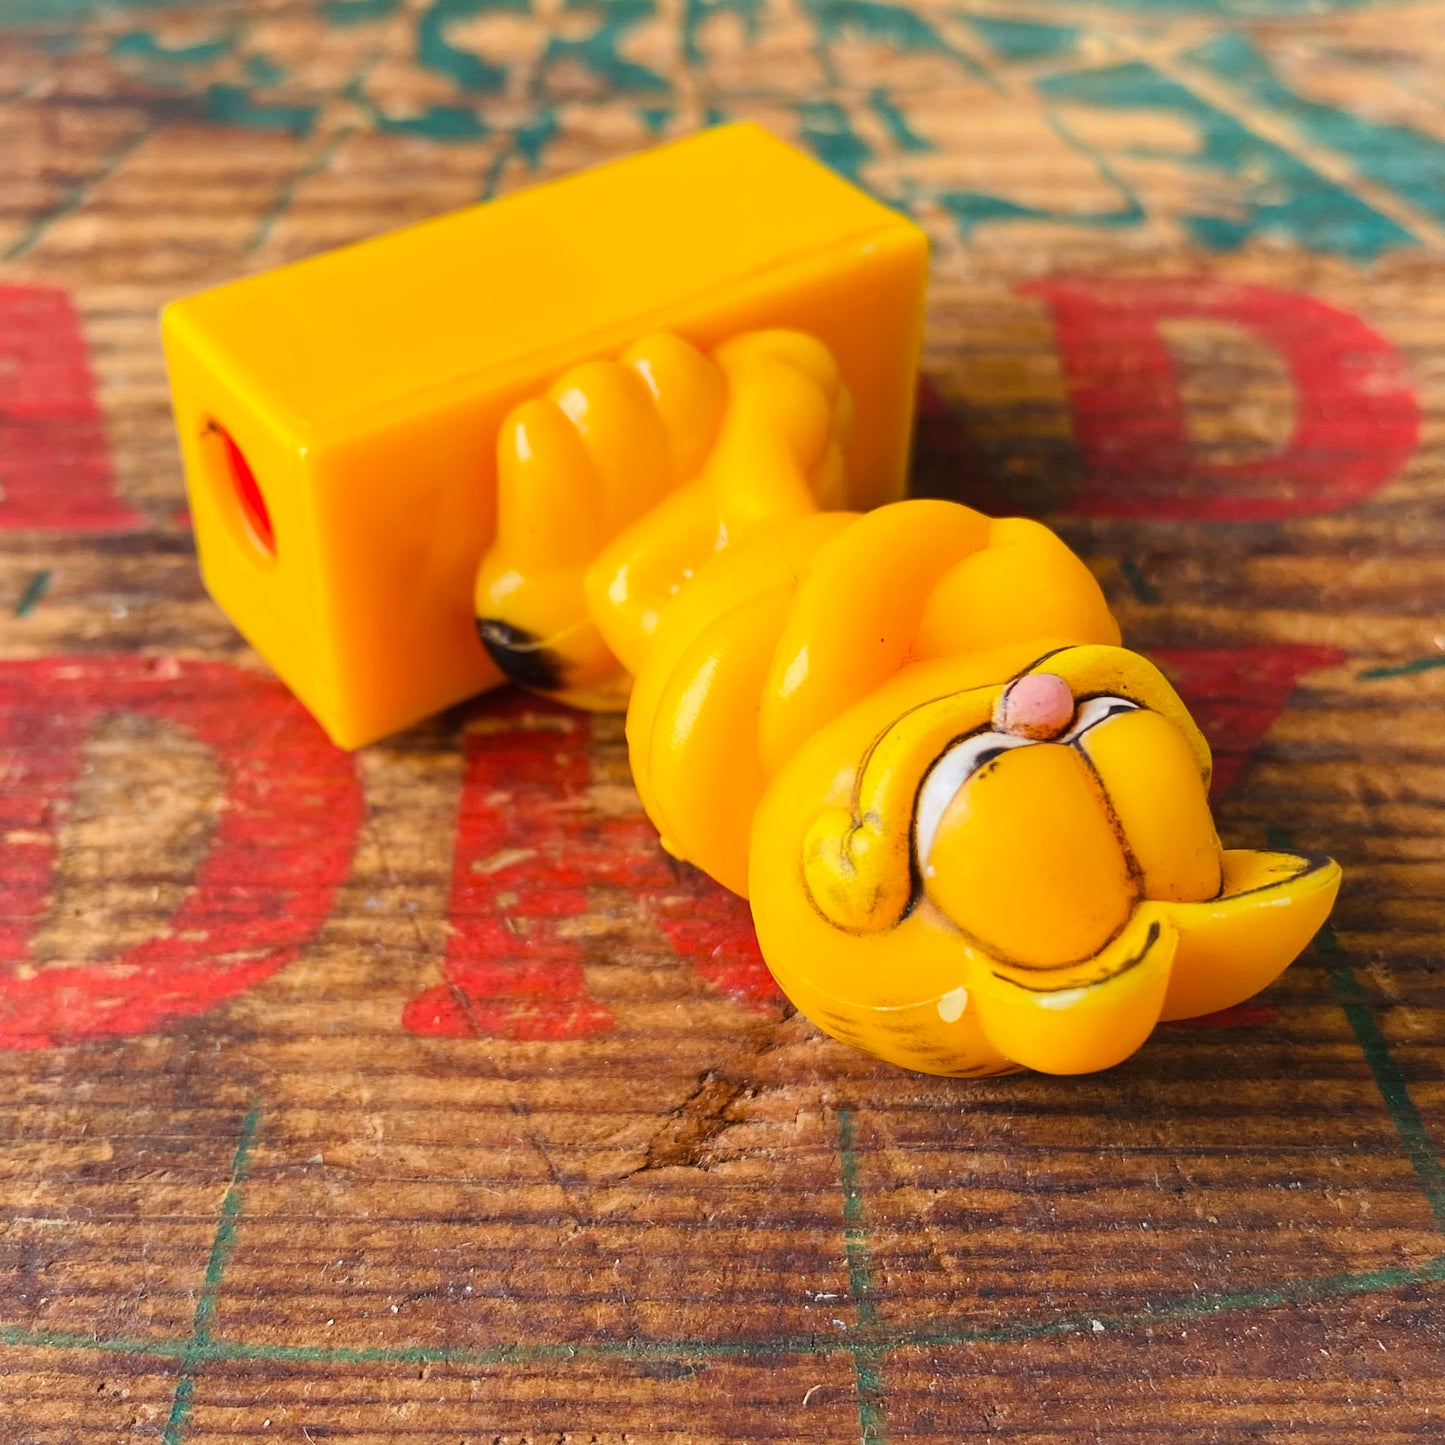 【1978 vintage】Garfield sharpener